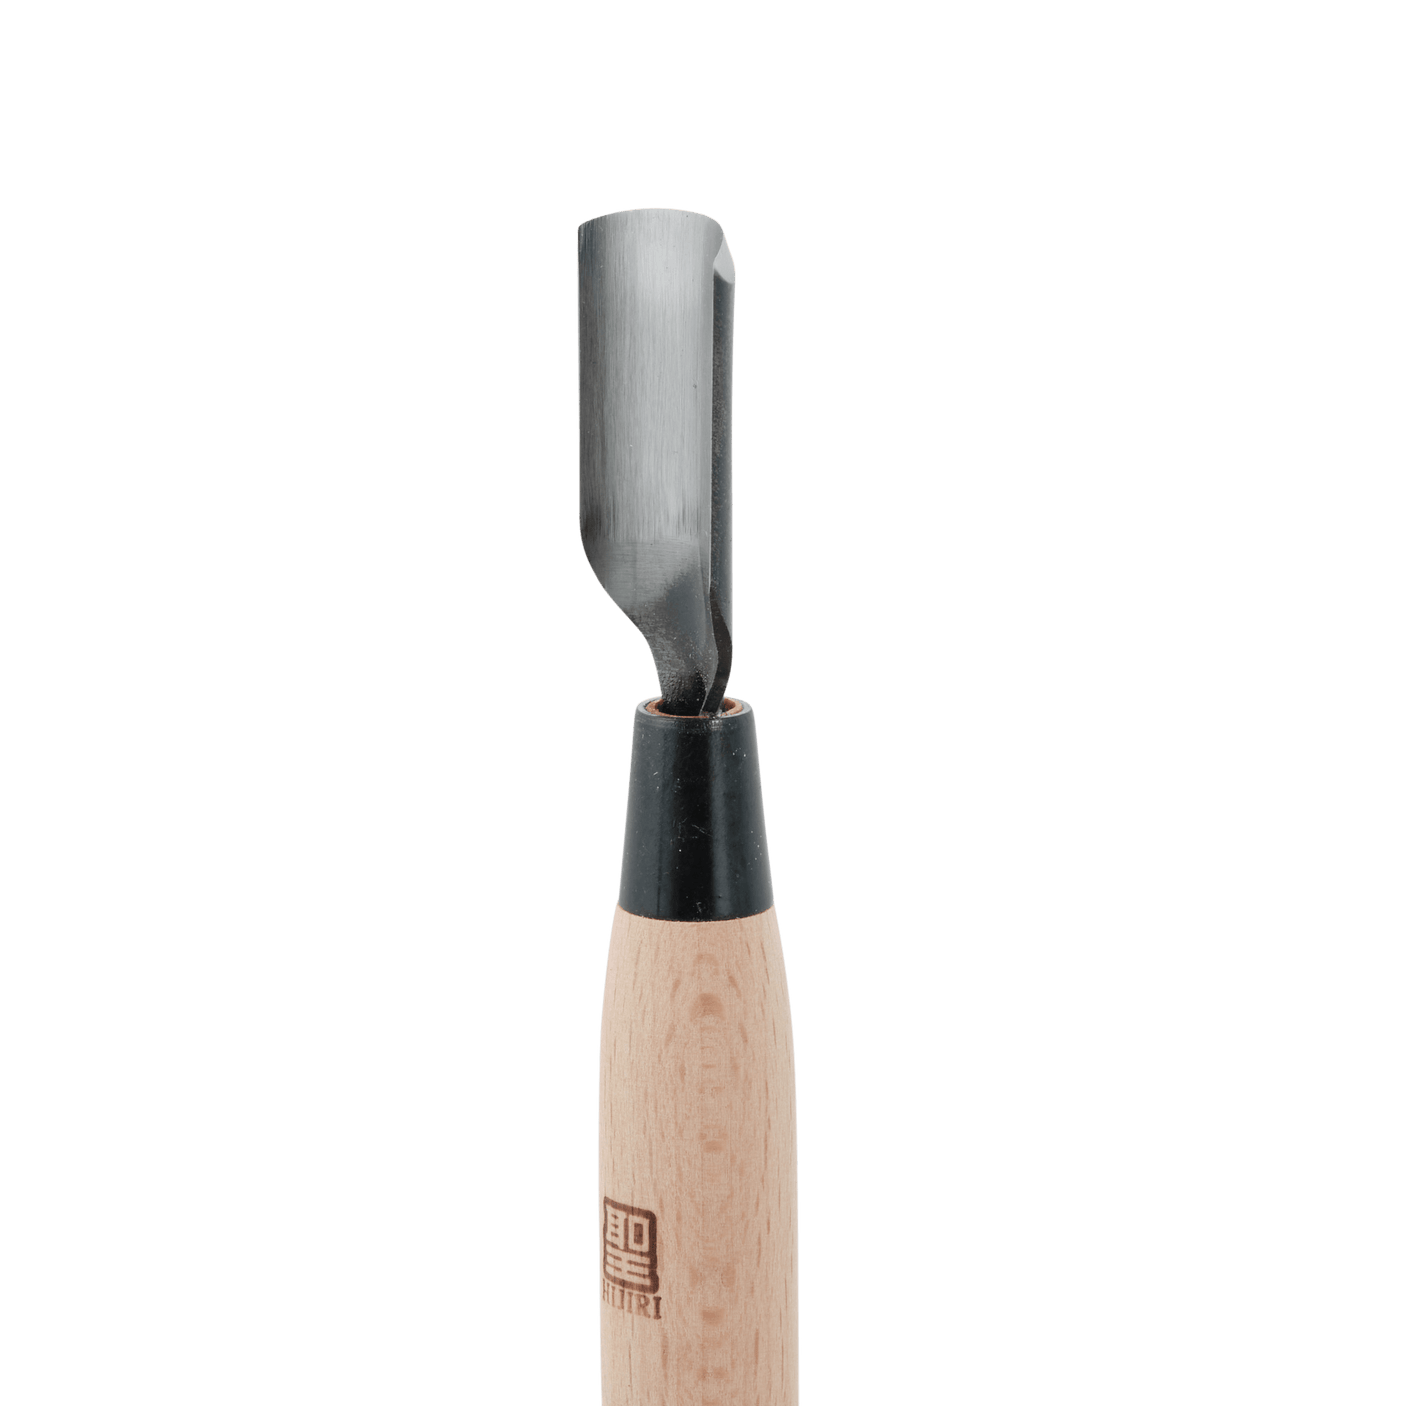 Leather Corner Profile Knife - 15mm Radius - Leather Working - Japanese Tools Australia